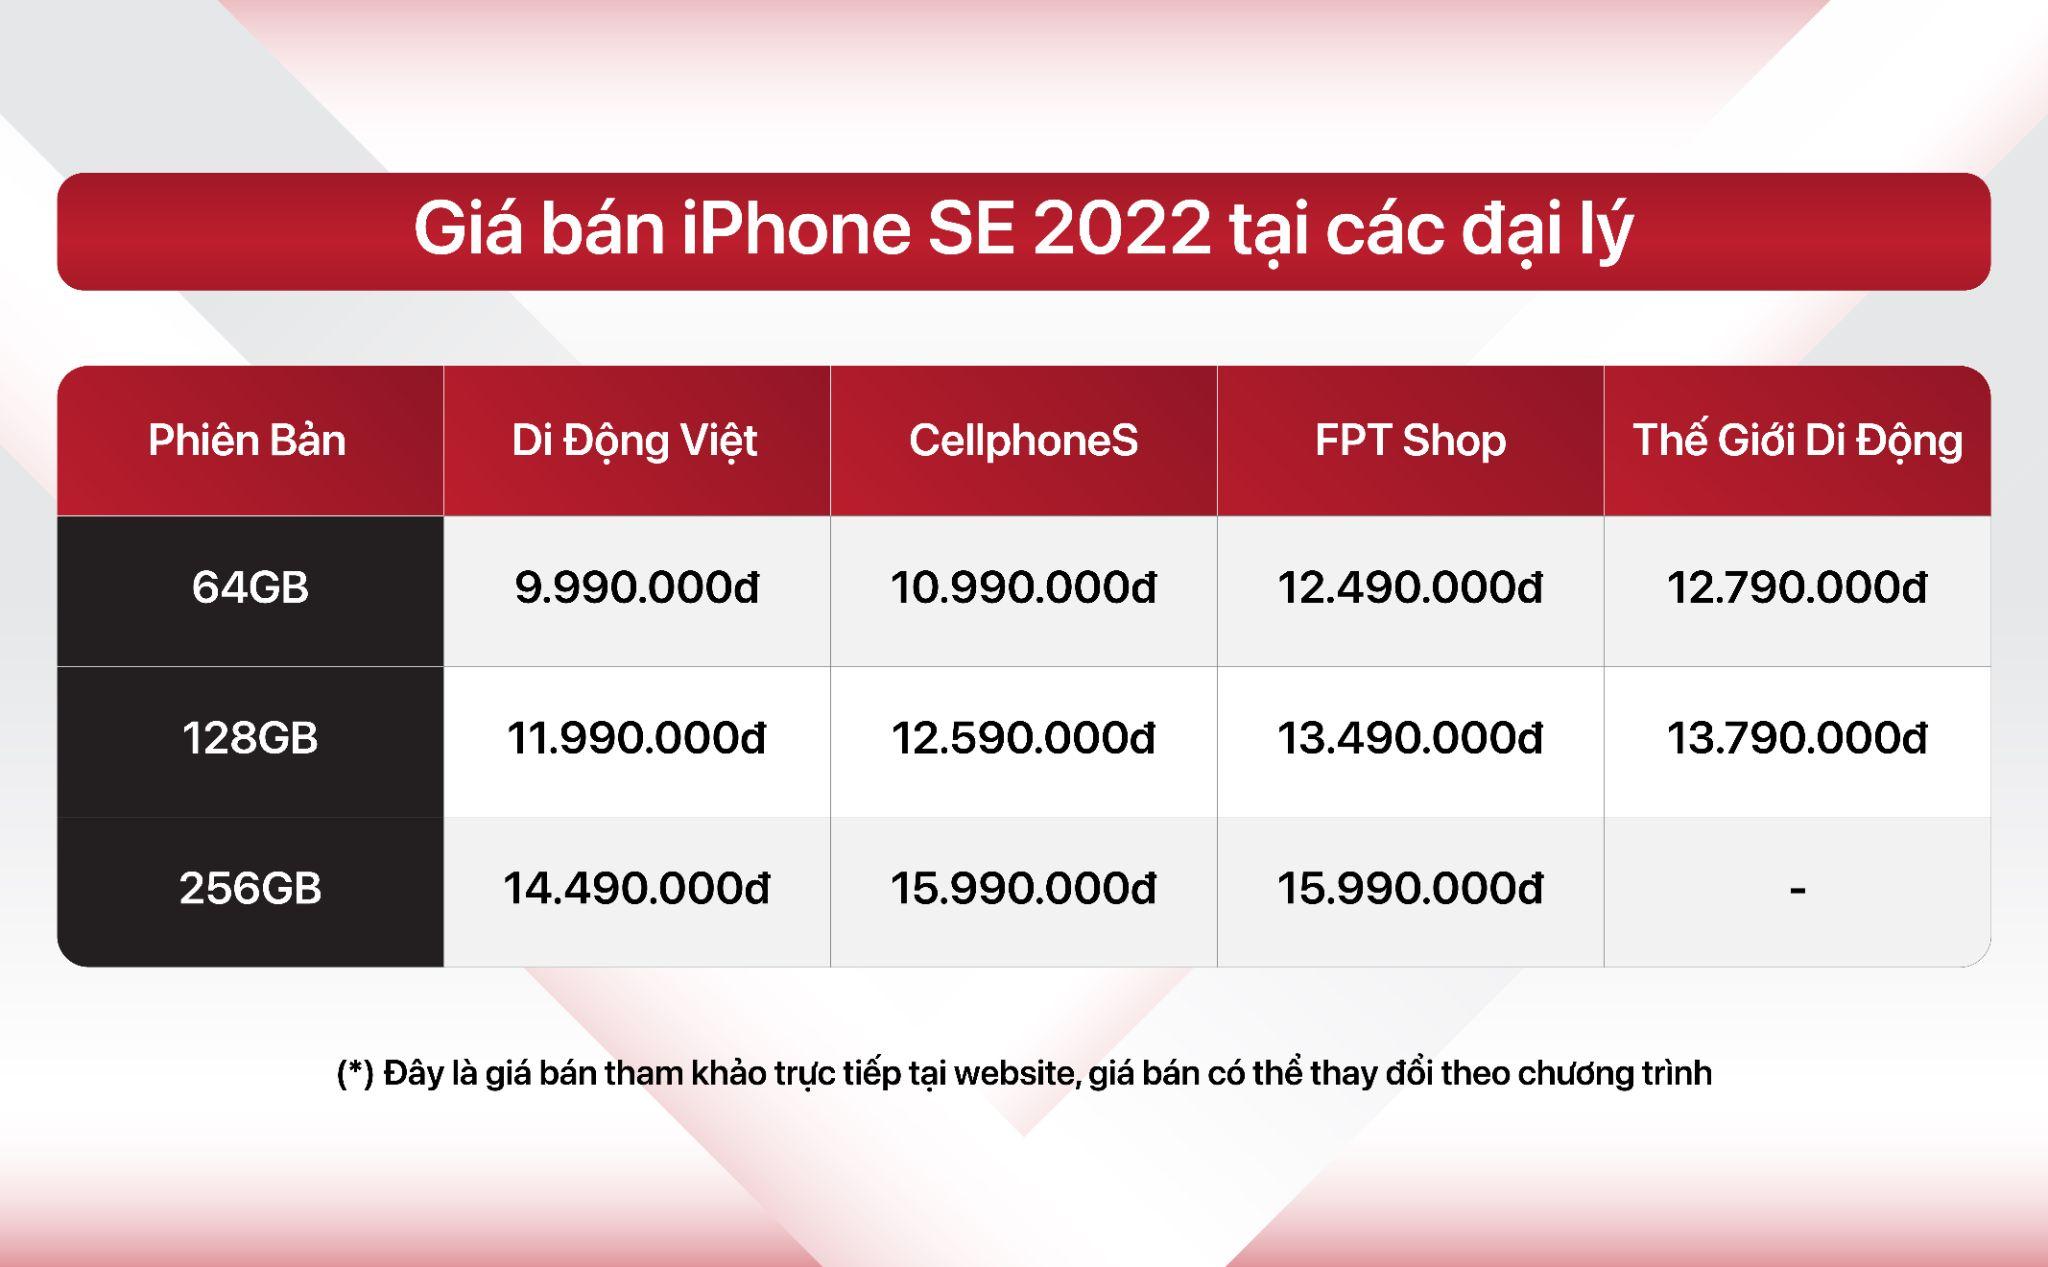 iPhone SE 2022 bất ngờ “sập giá” chỉ sau 1 tháng mở bán, iPhone 13, iMac 24 inch M1 đạt kỷ lục giá về giá